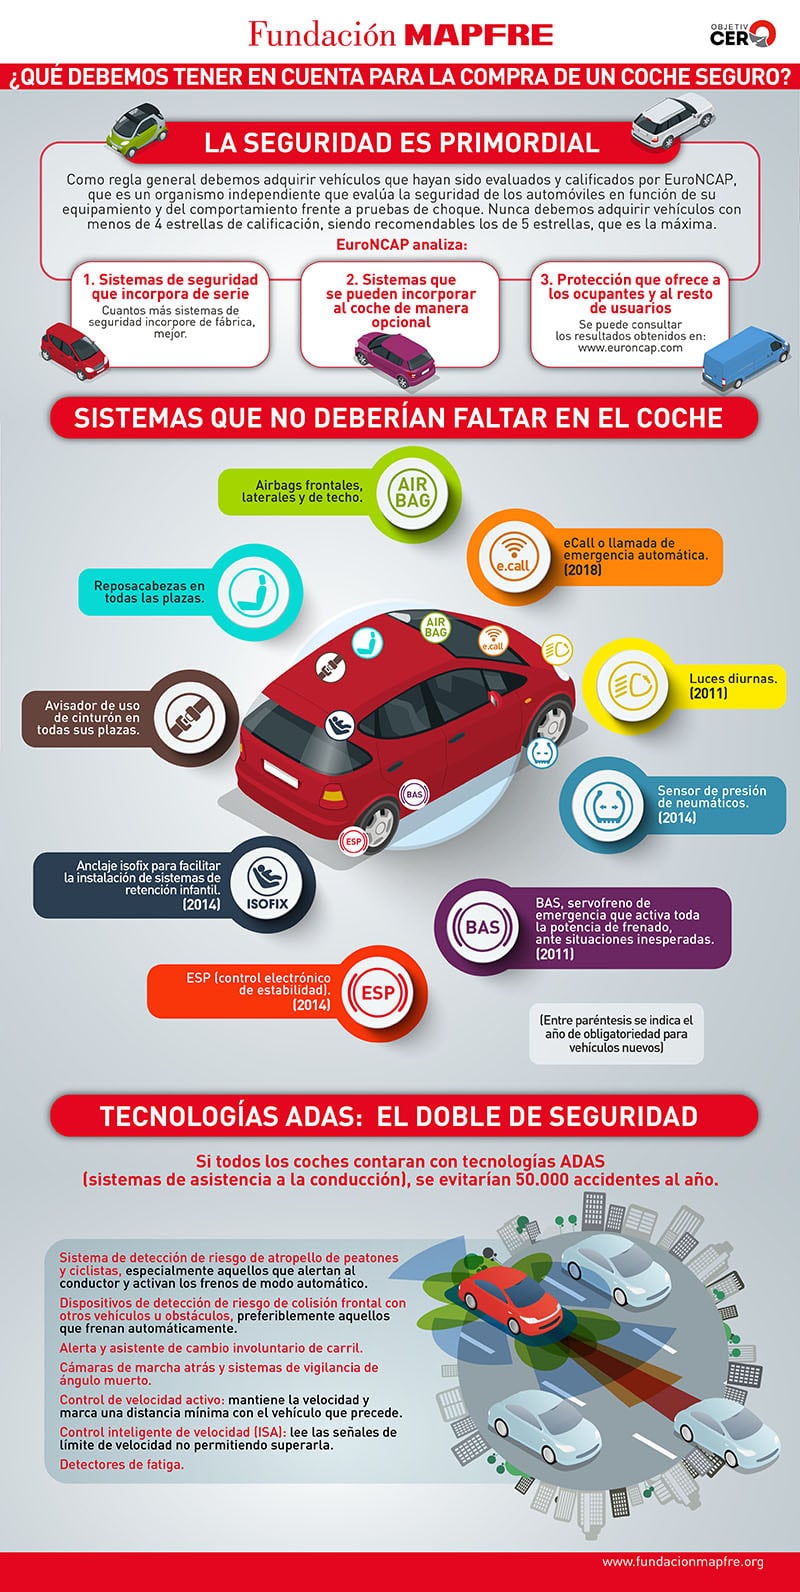 Infografía que explica qué tecnología debe tener el vehículo que vamos a comprar